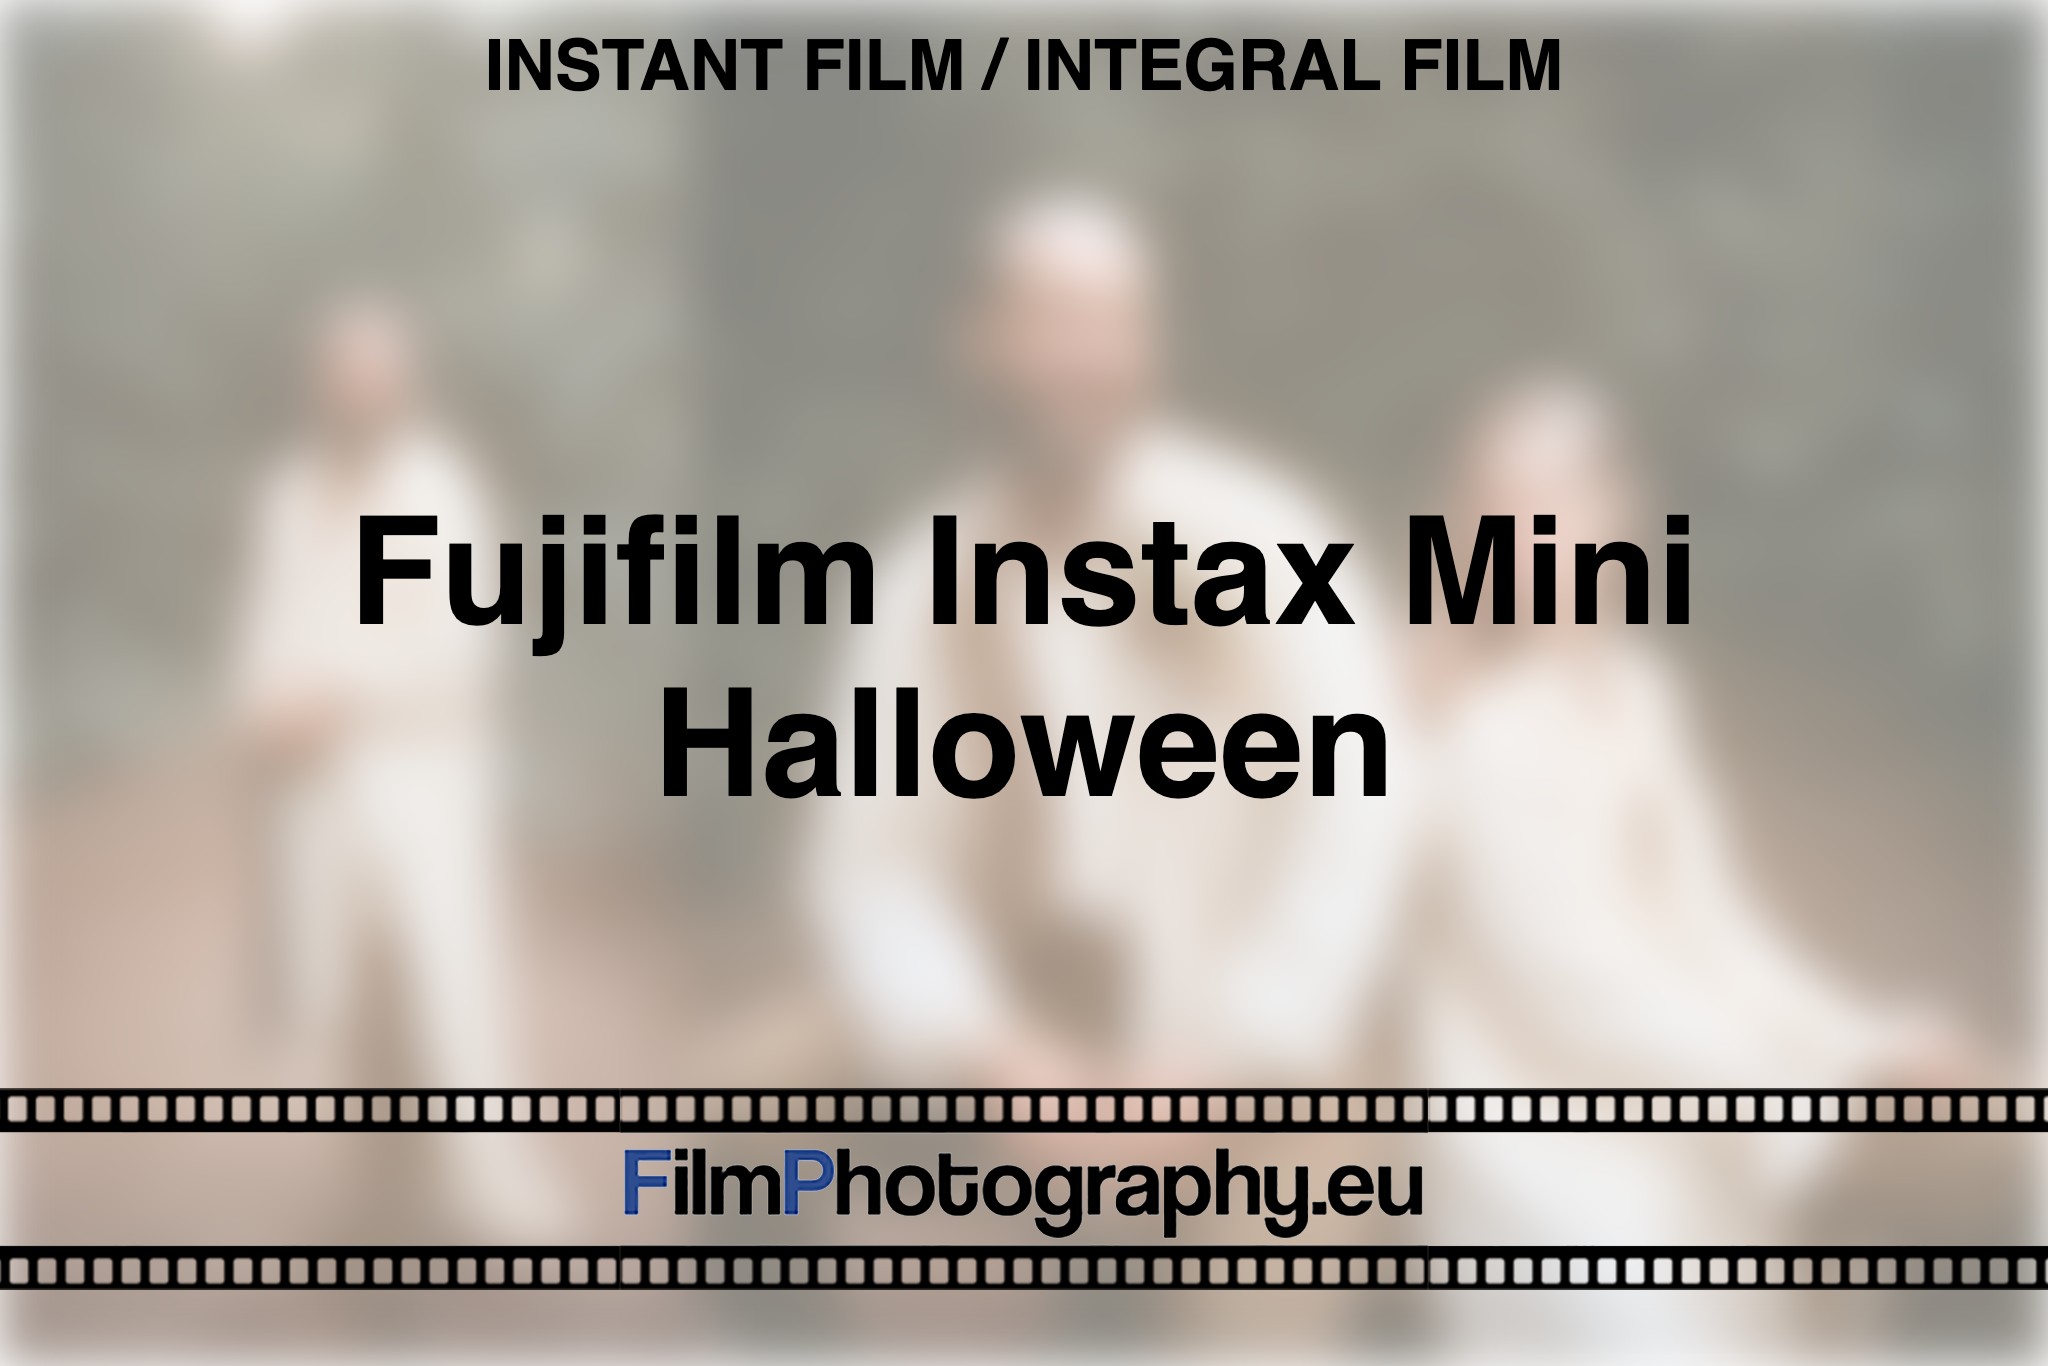 fujifilm-instax-mini-halloween-instant-film-integral-film-bnv